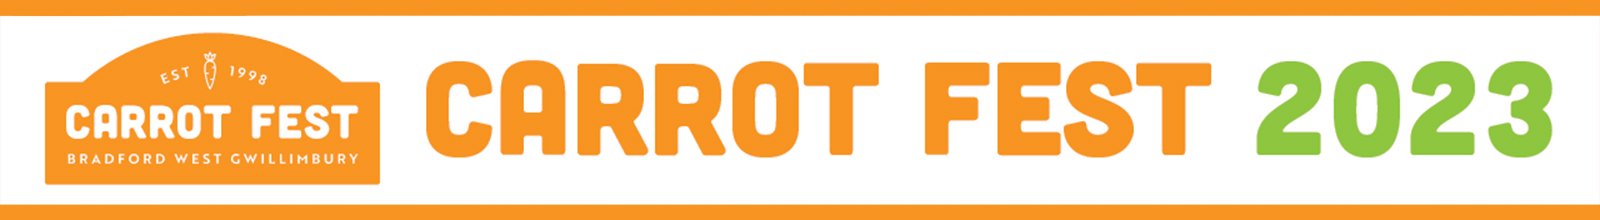 Carrot Fest event banner reading "Carrot Fest 2023" and event logo on the left